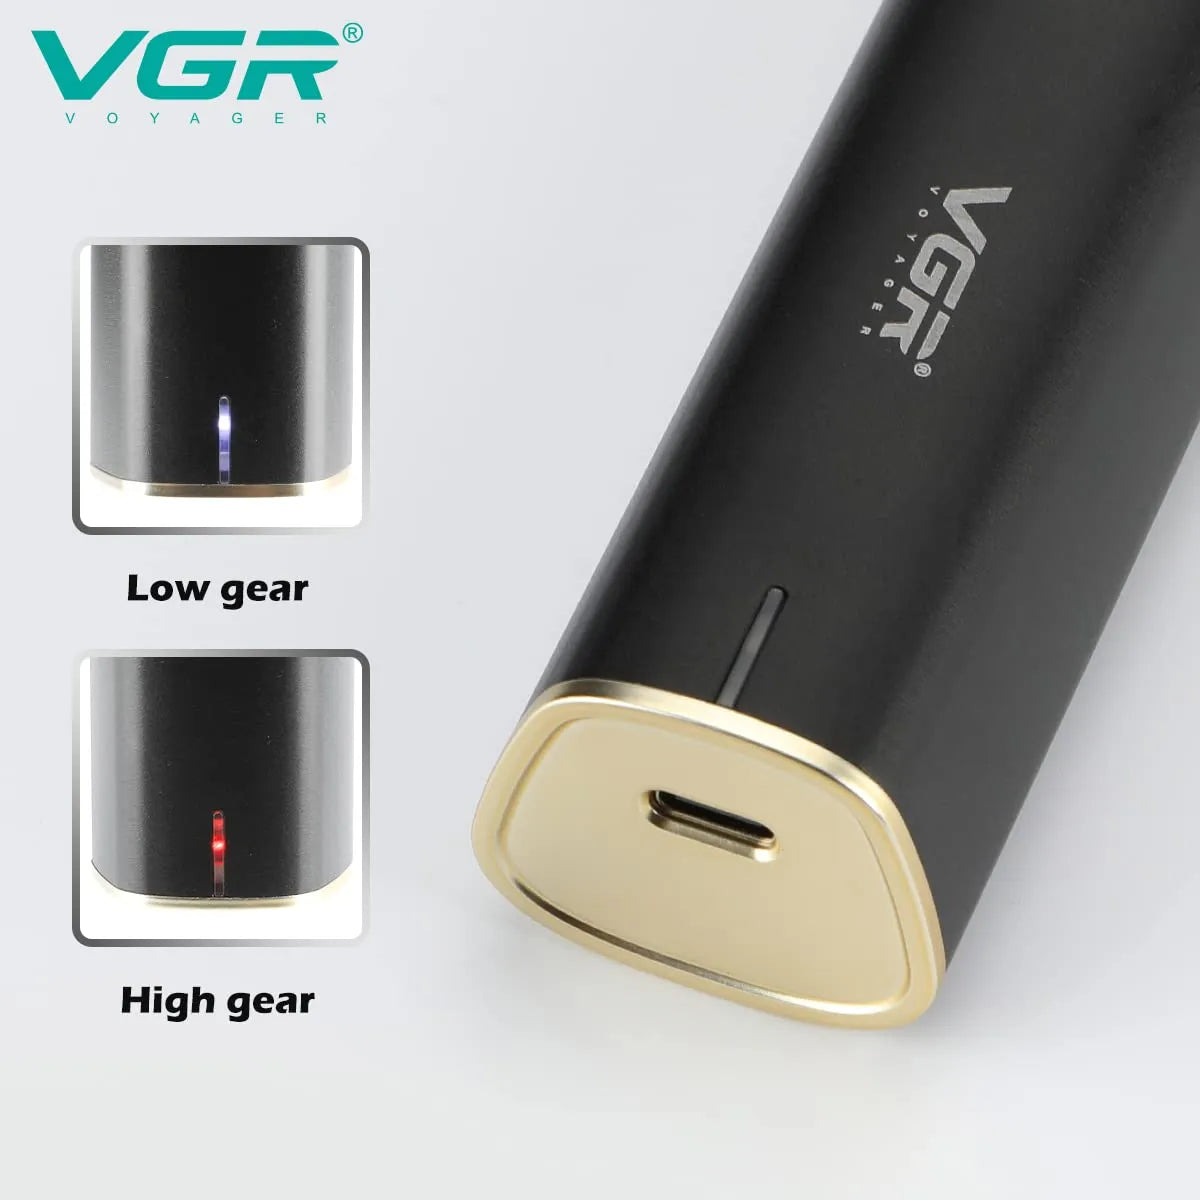 VGR V-957 Hair Trimmer For Men, Black